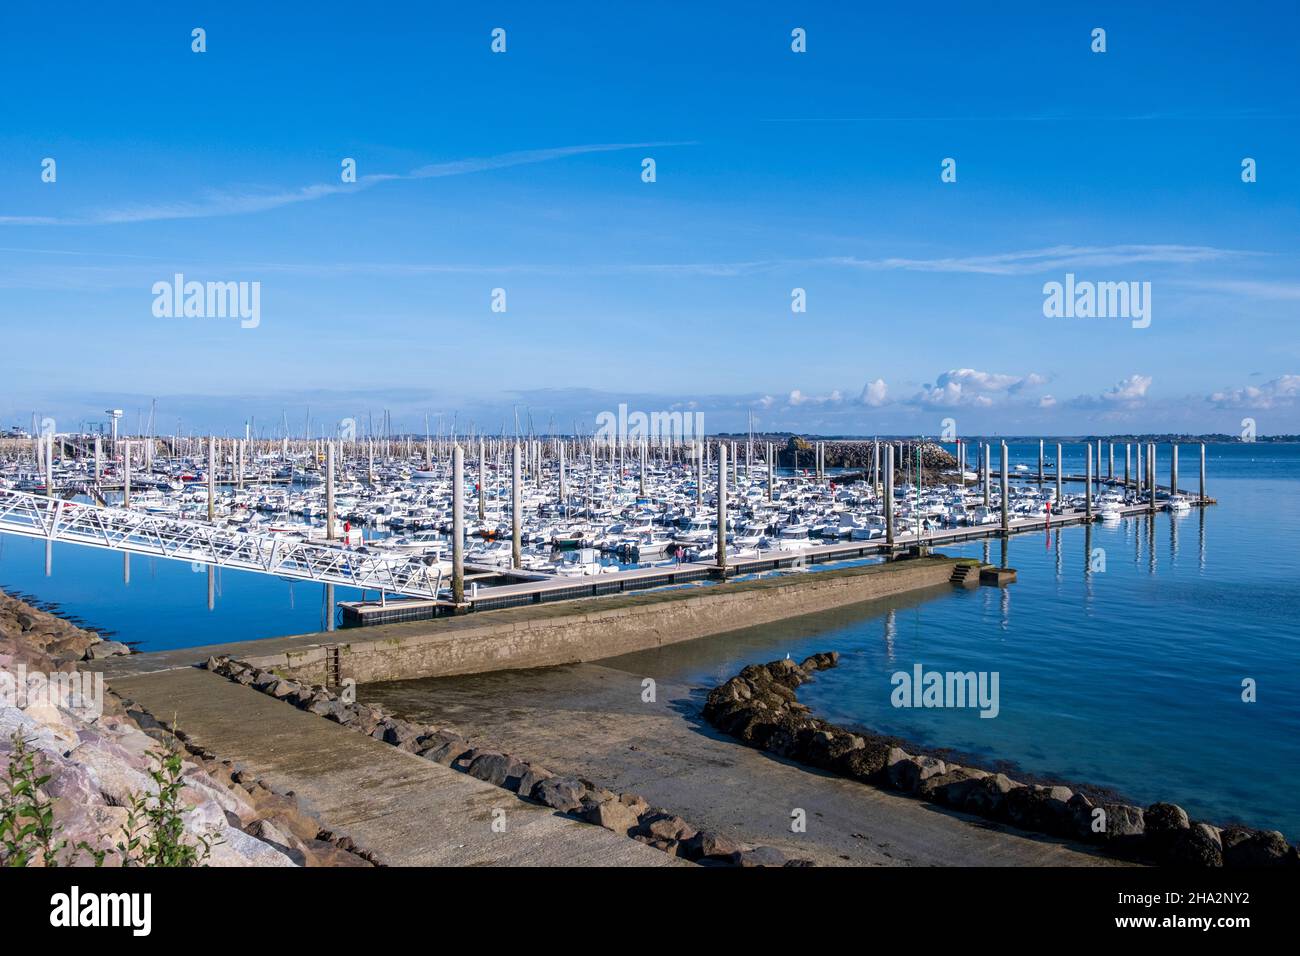 Saint-Cast-le-Guildo (Bretagna, Francia nord-occidentale): Panoramica del porto turistico lungo la zona costiera “Cote d’Emeraude” Foto Stock